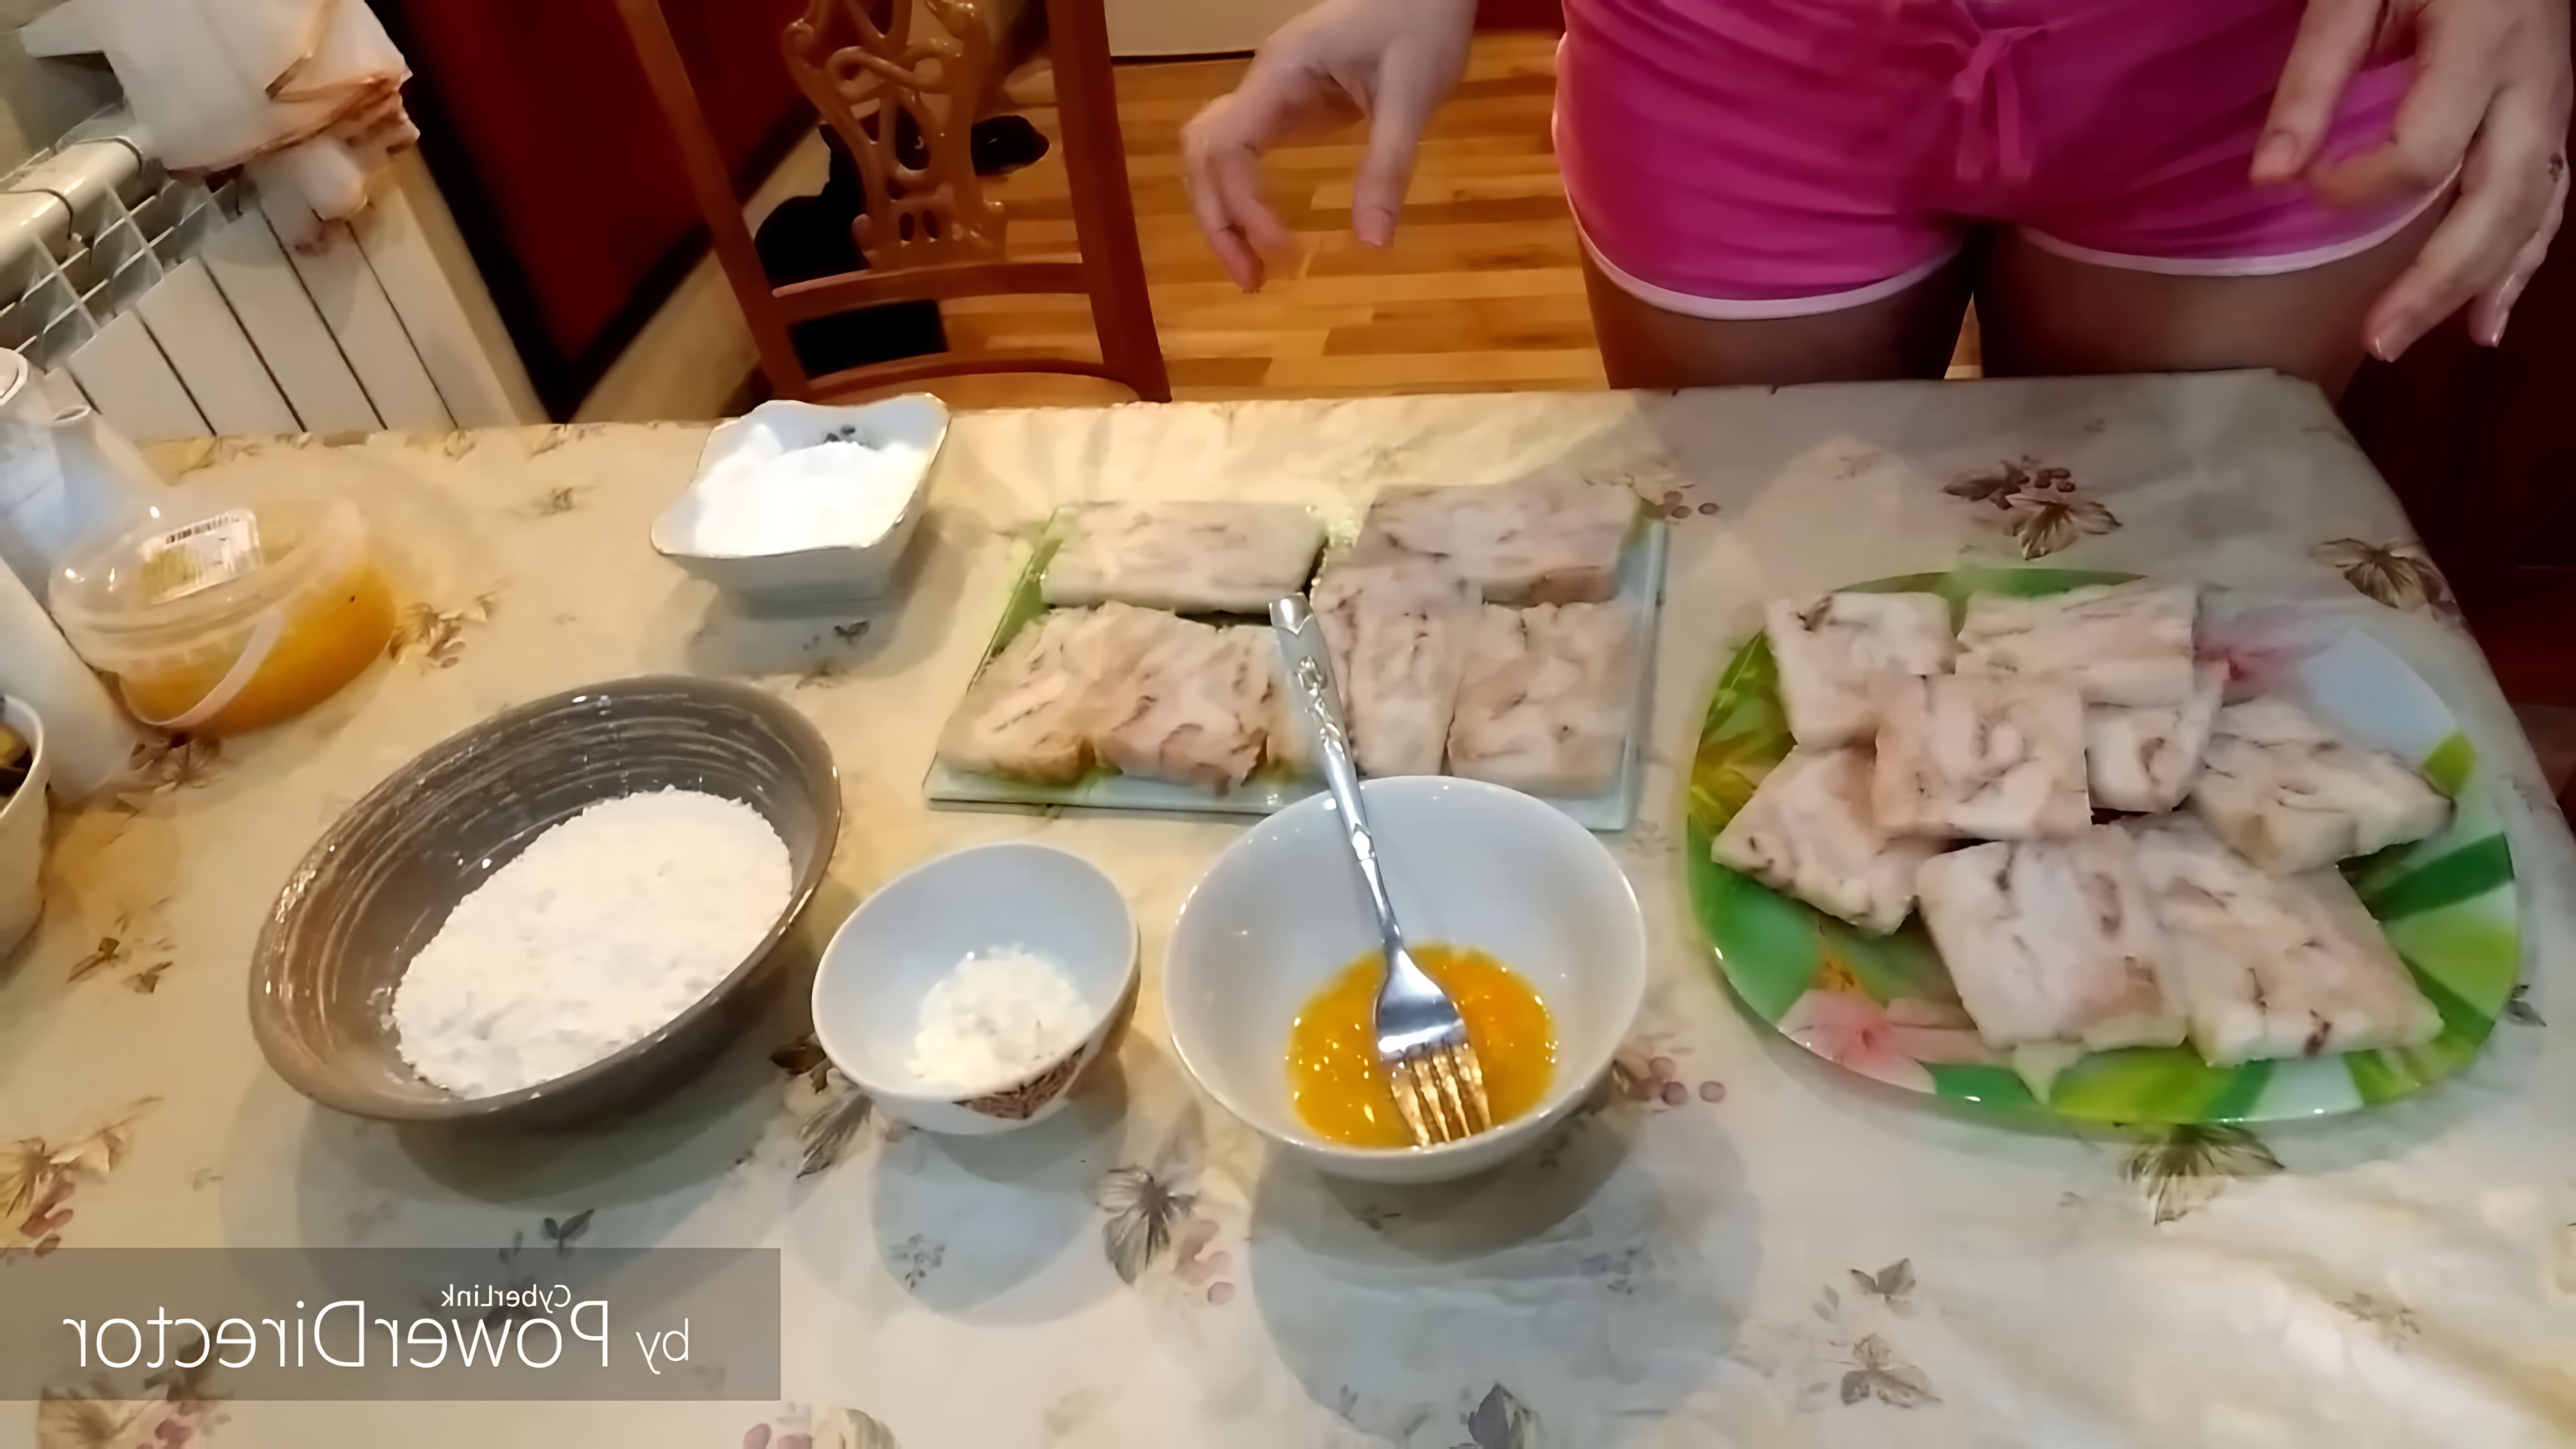 В этом видео демонстрируется процесс приготовления филе минтая